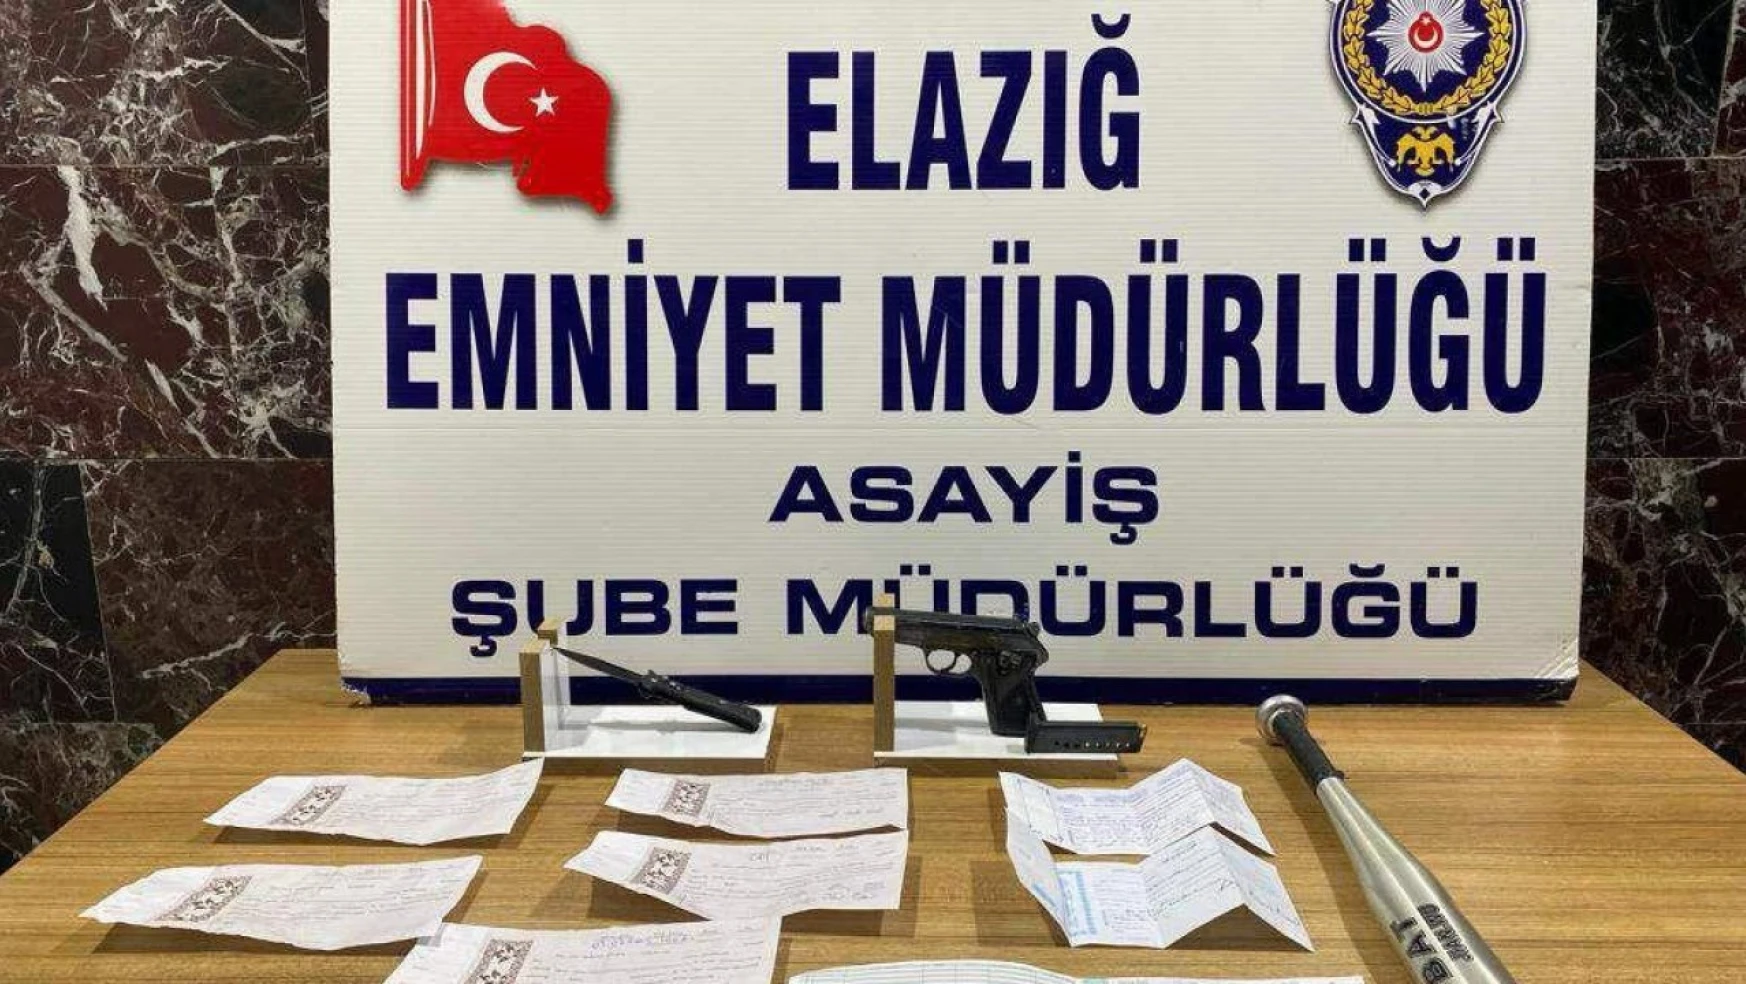 Elazığ polisi suçlulara göz açtırmıyor: 6 tutuklama